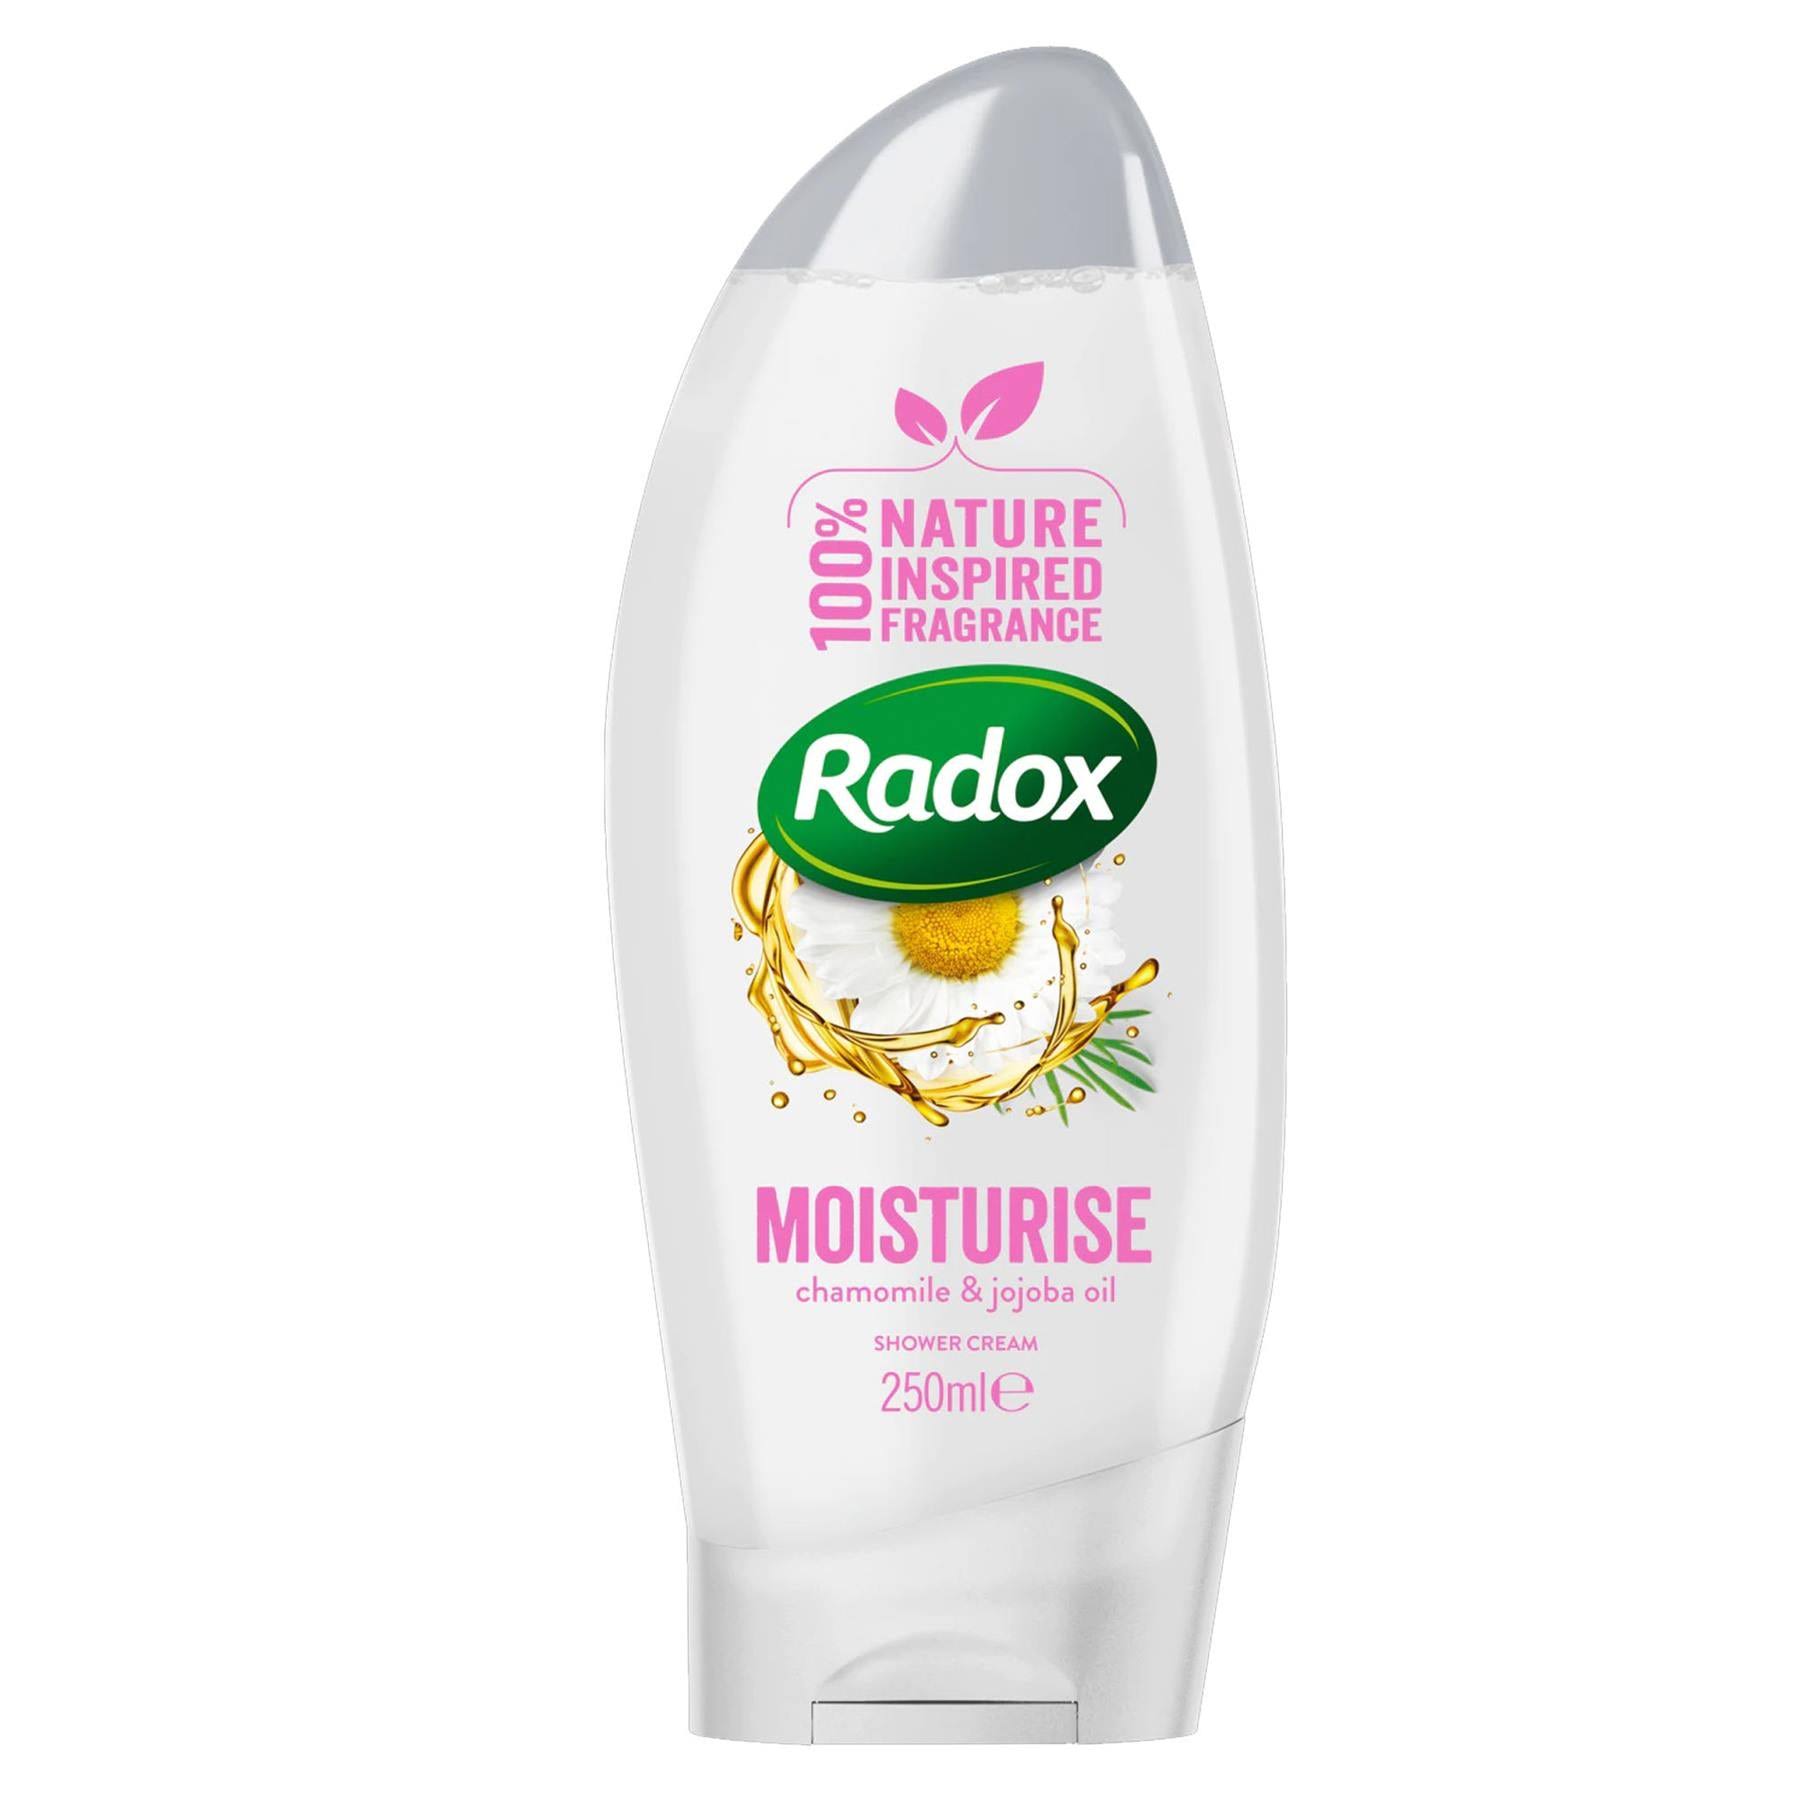 Radox Moisturising Shower Cream - 250ml